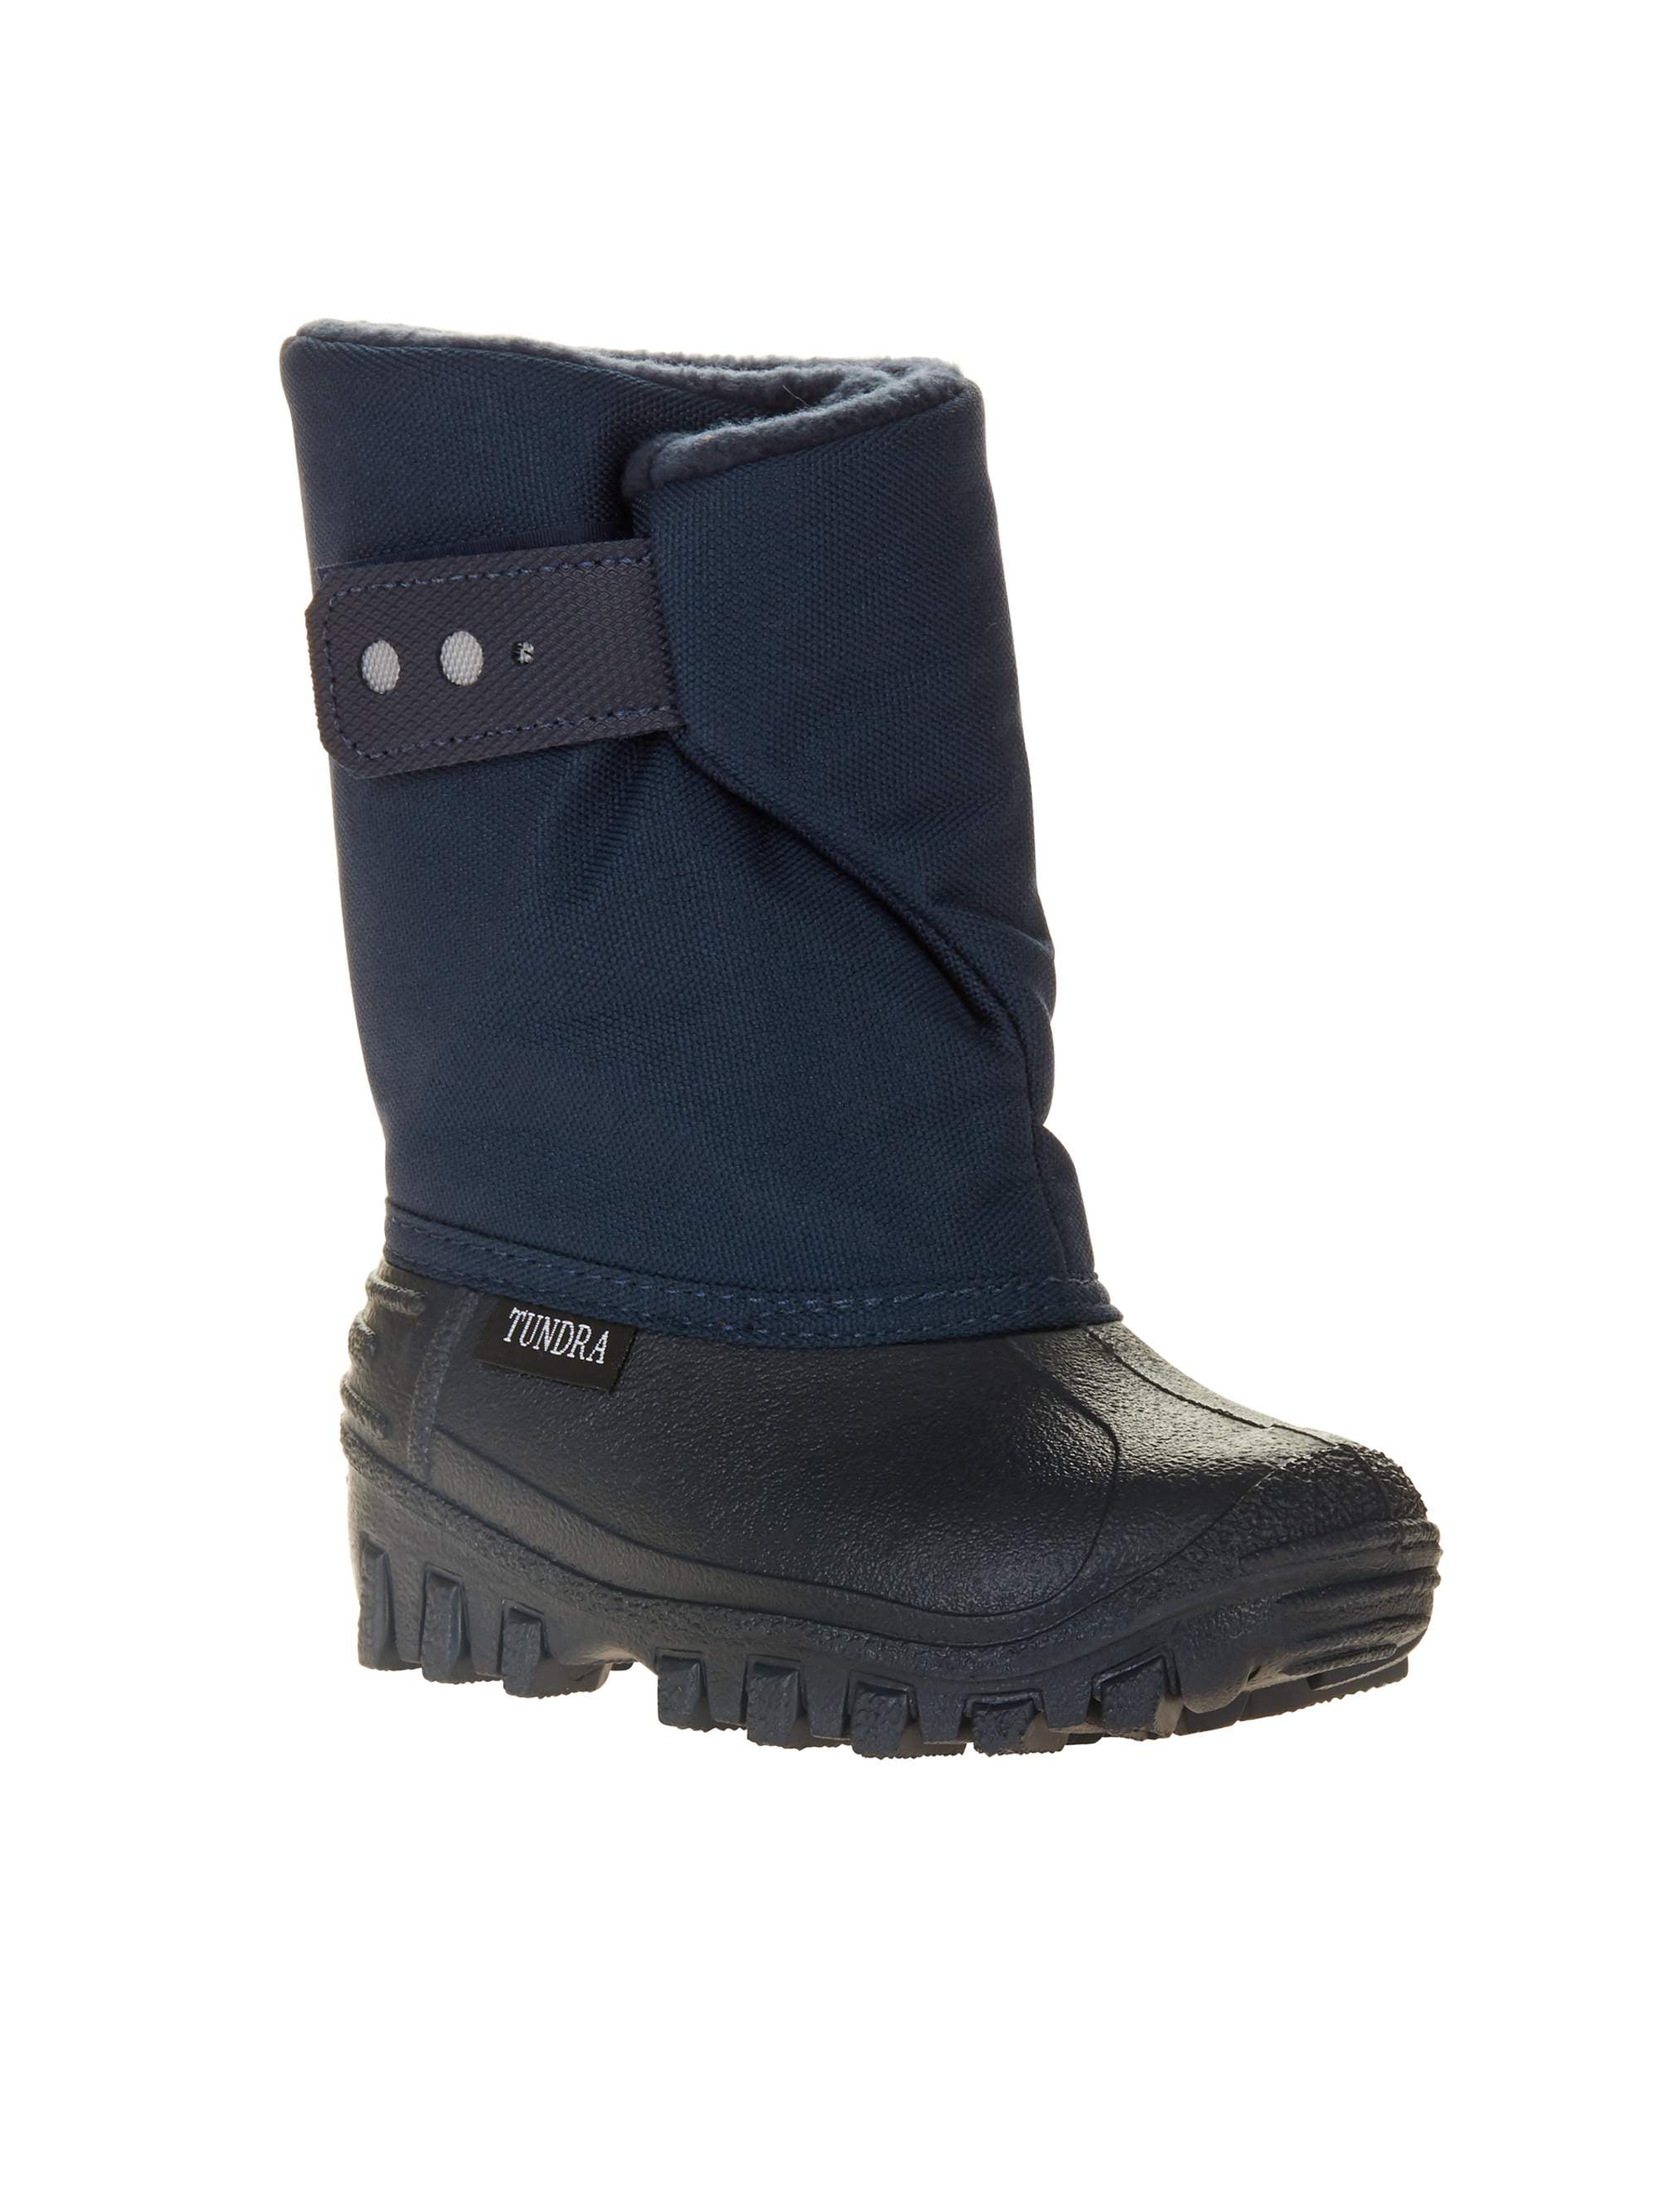 waterproof snow boots walmart